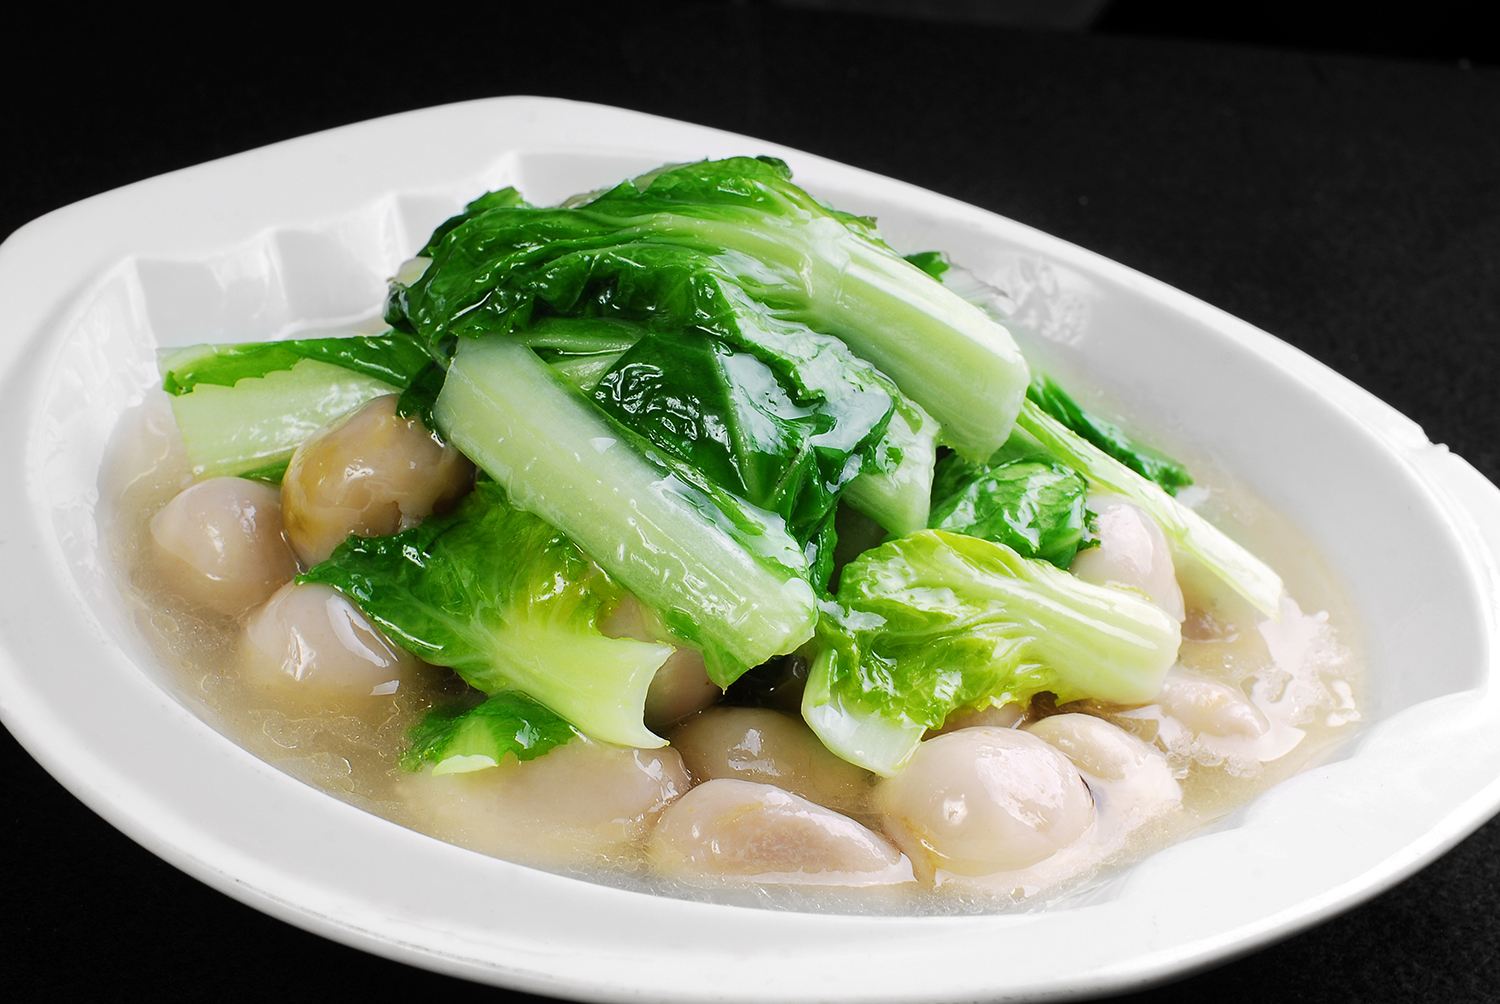 清炒小白菜:颜色翠绿,清脆可口,营养丰富,你值得拥有